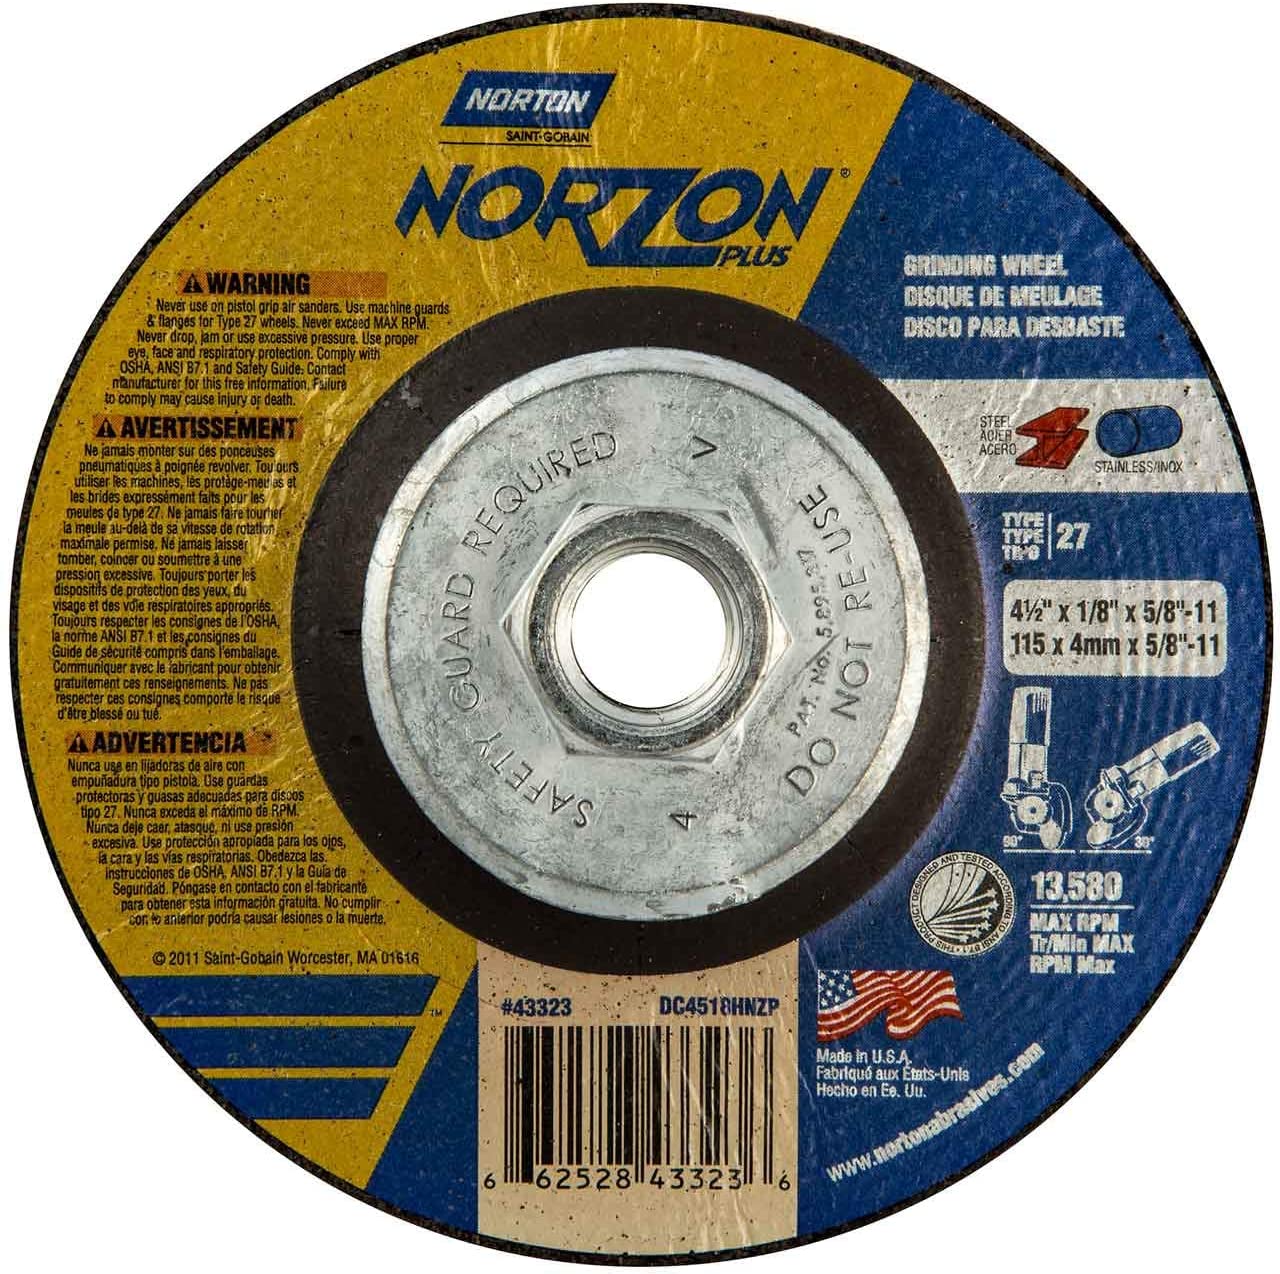 Norton 66252843323 4-1 / 2x1 / 8x5 / 8-11 inch NorZon Plus Depress Center Wheels, Type 27, 24 Grit, 10 Count